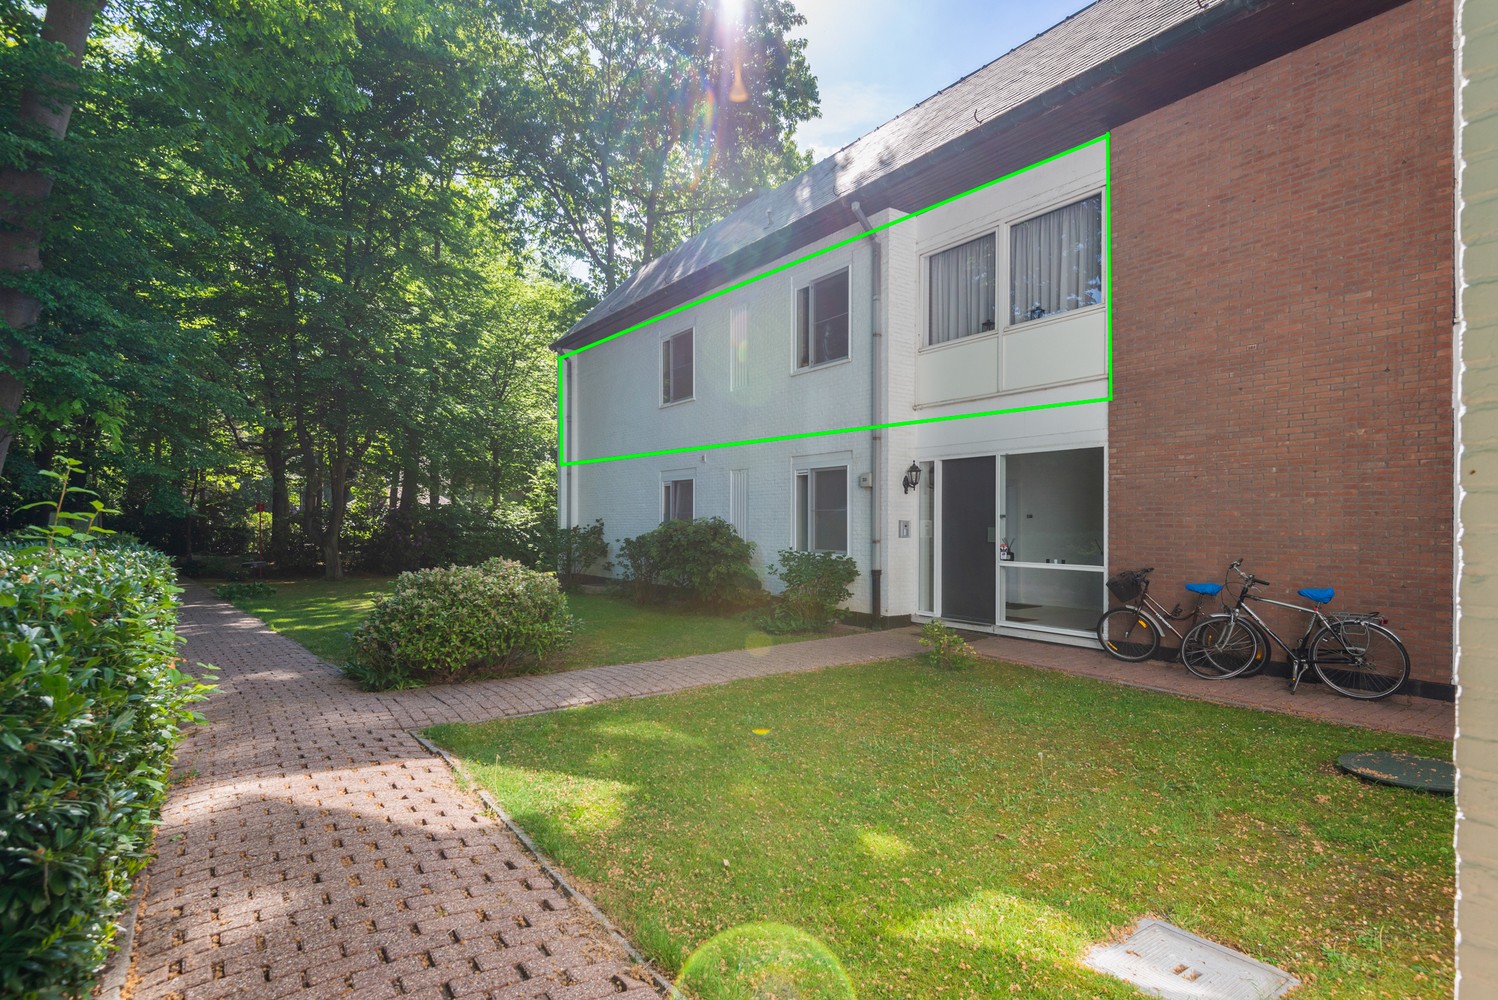 Riant appartement (148 m²) met twee slaapkamers, terras en omringd door groen. afbeelding 18